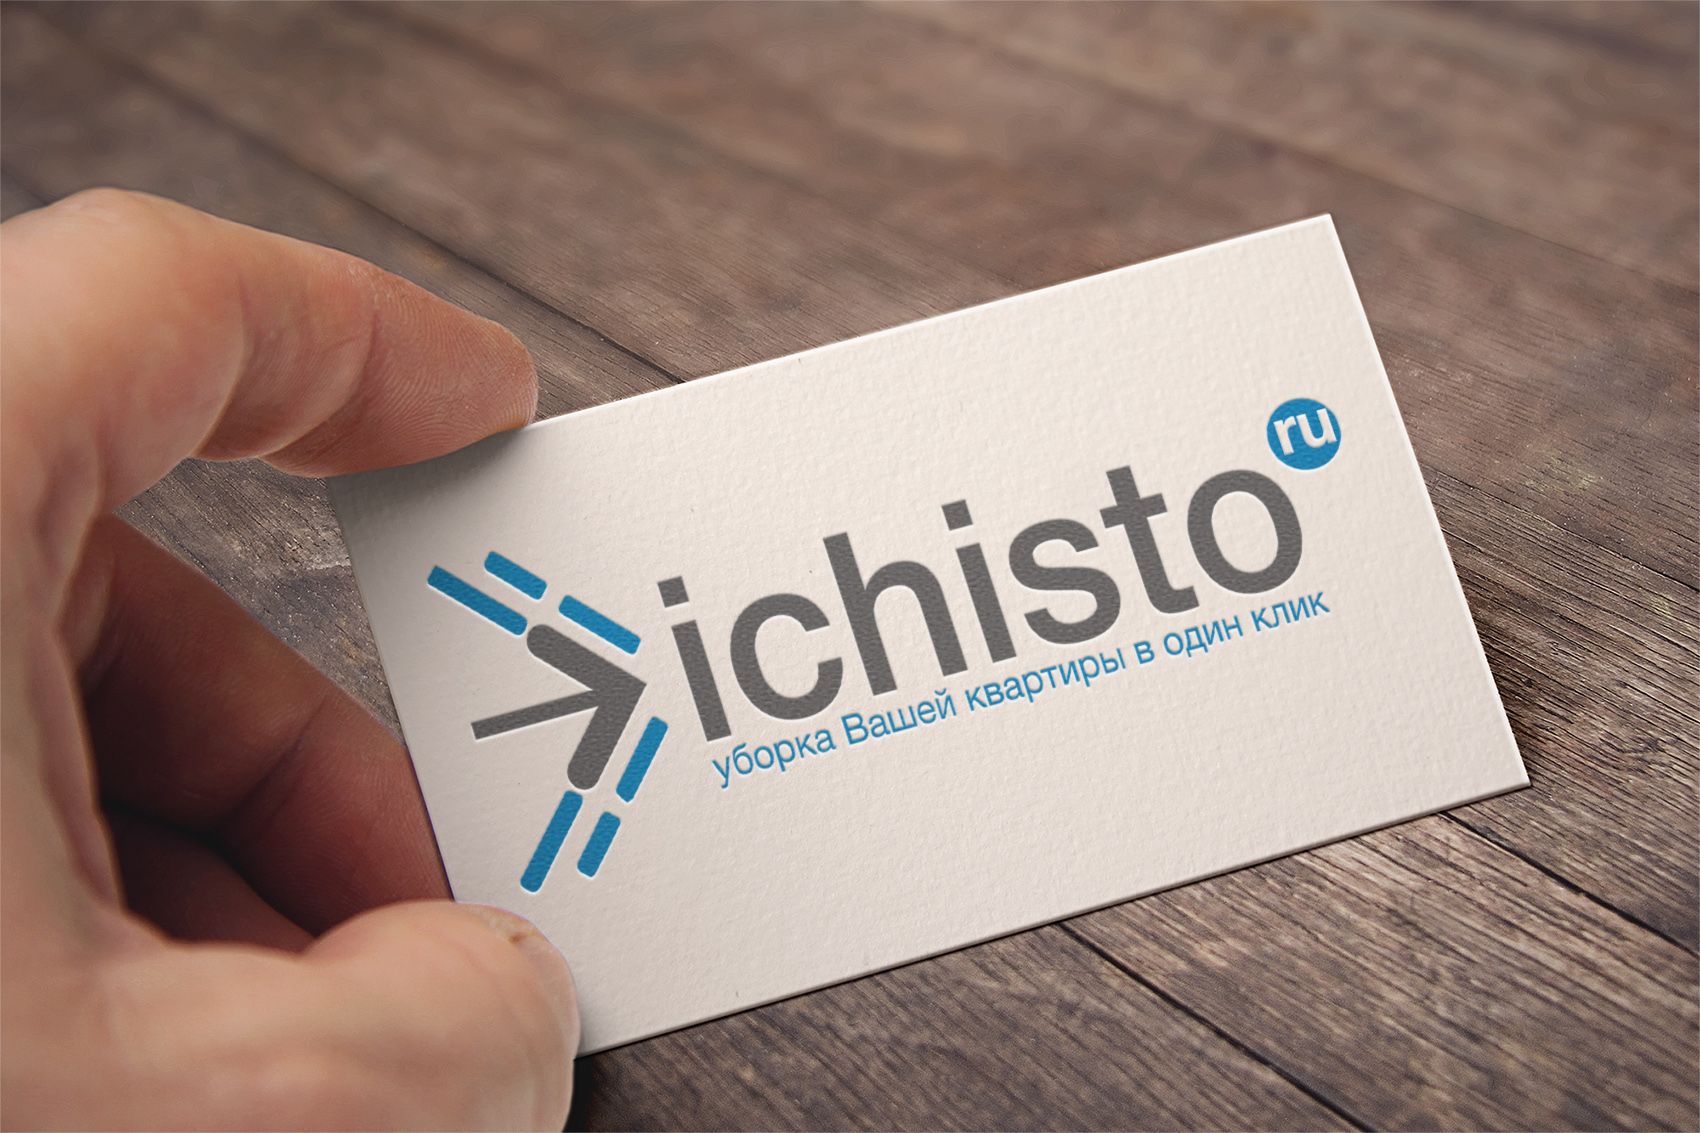 iChisto - уборка в 1 клик - дизайнер vadimuch-1